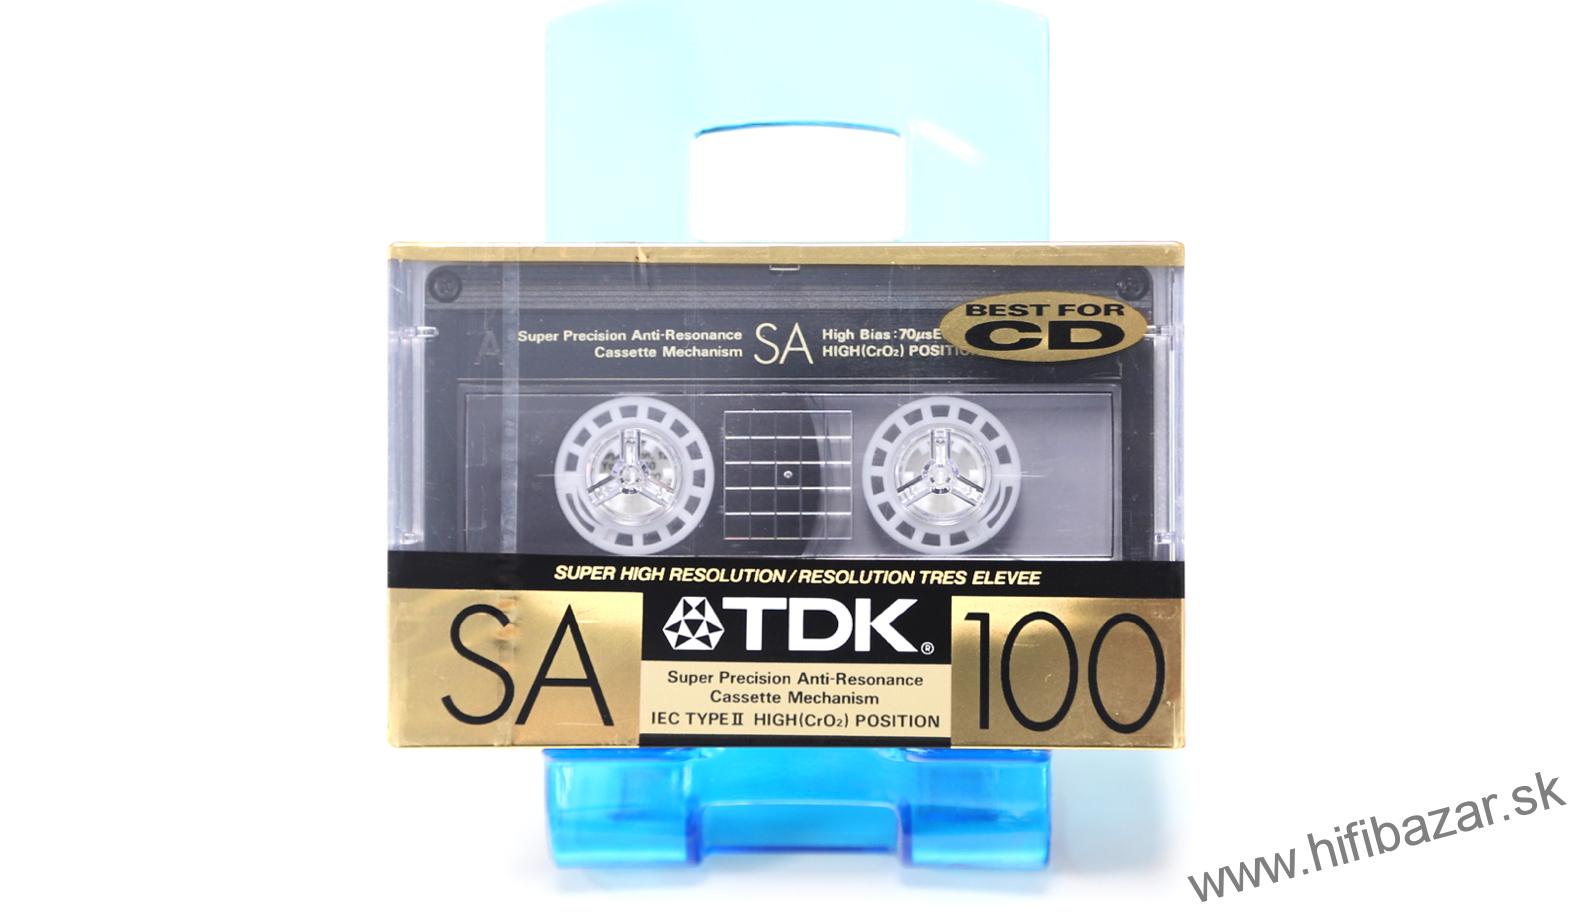 TDK SA-100 High Position